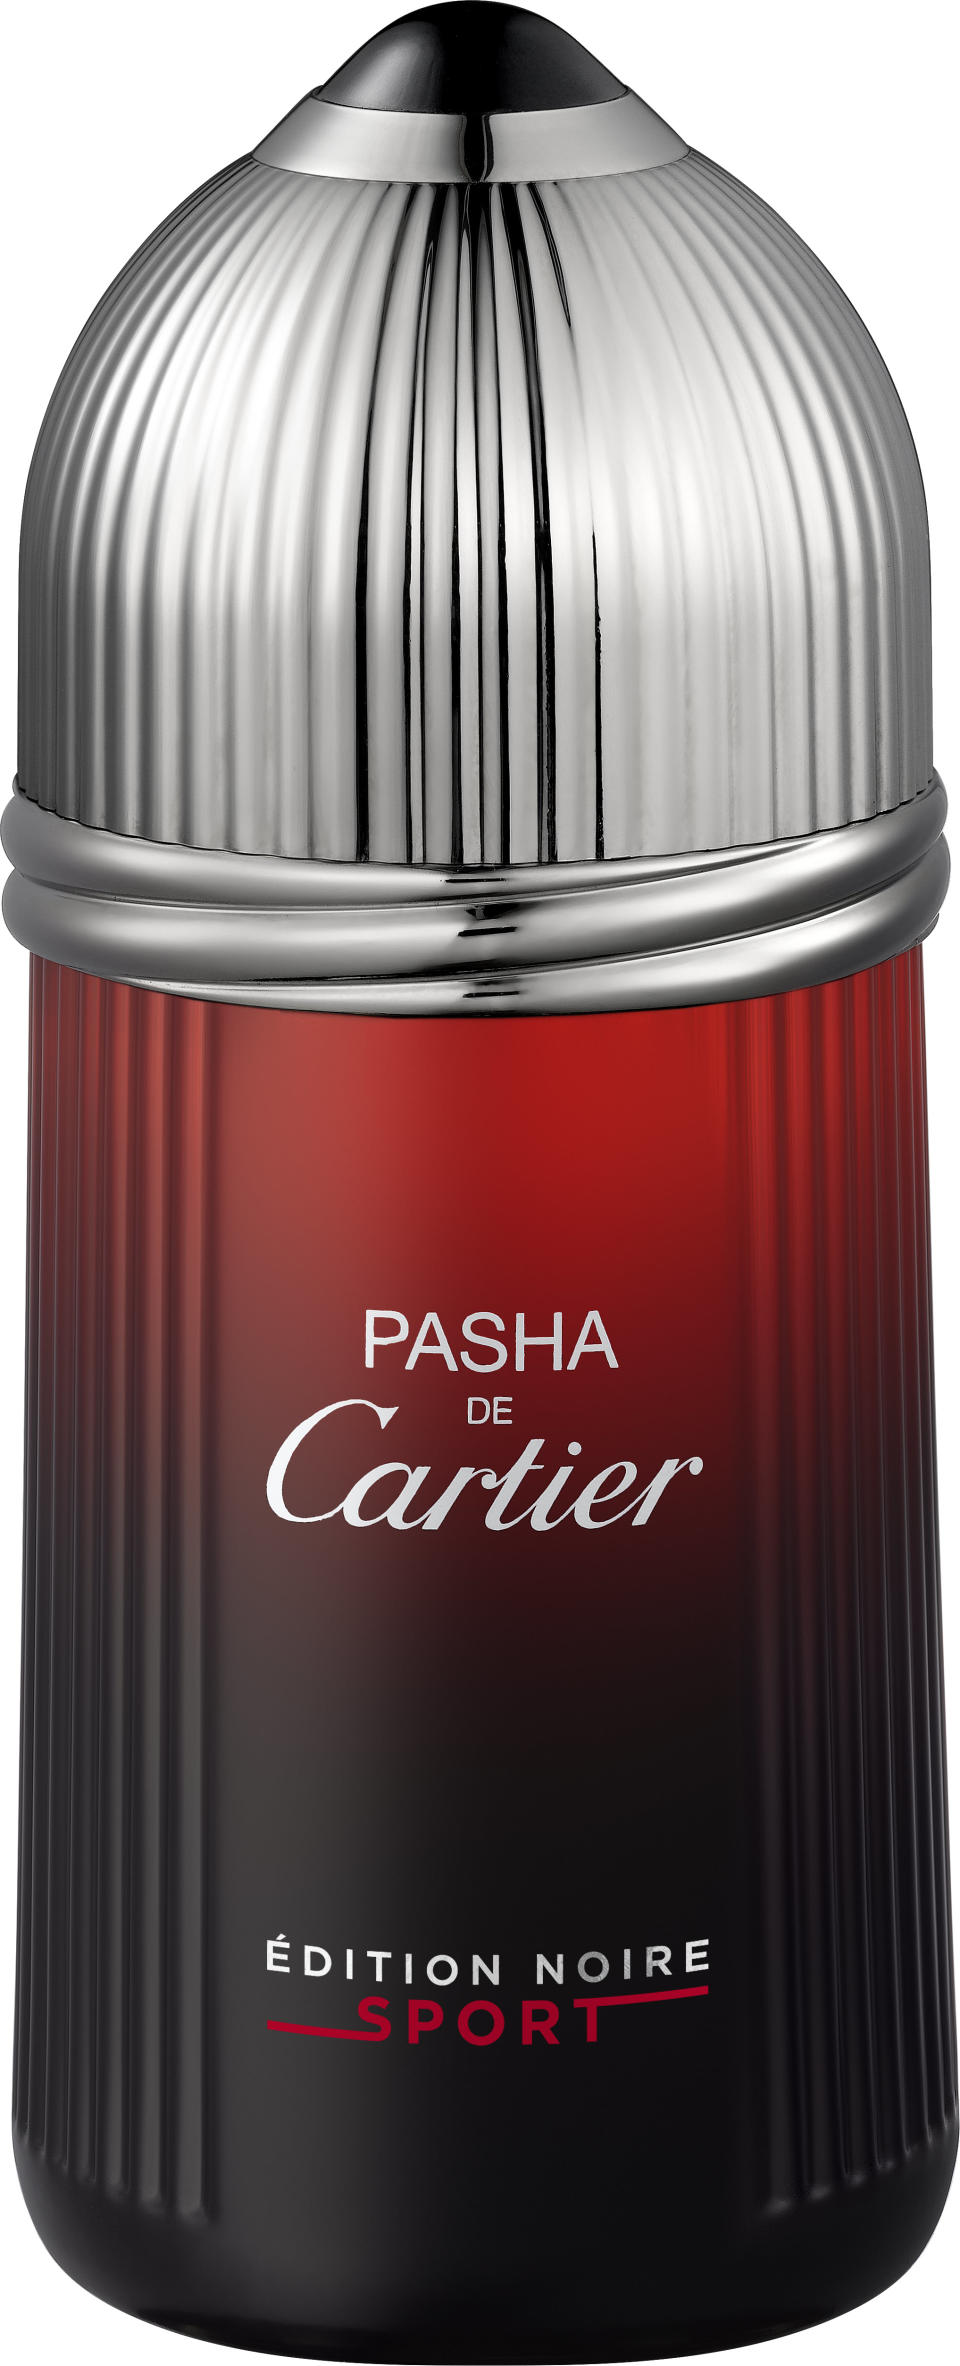 Cartier Pasha Édition Noire Sport